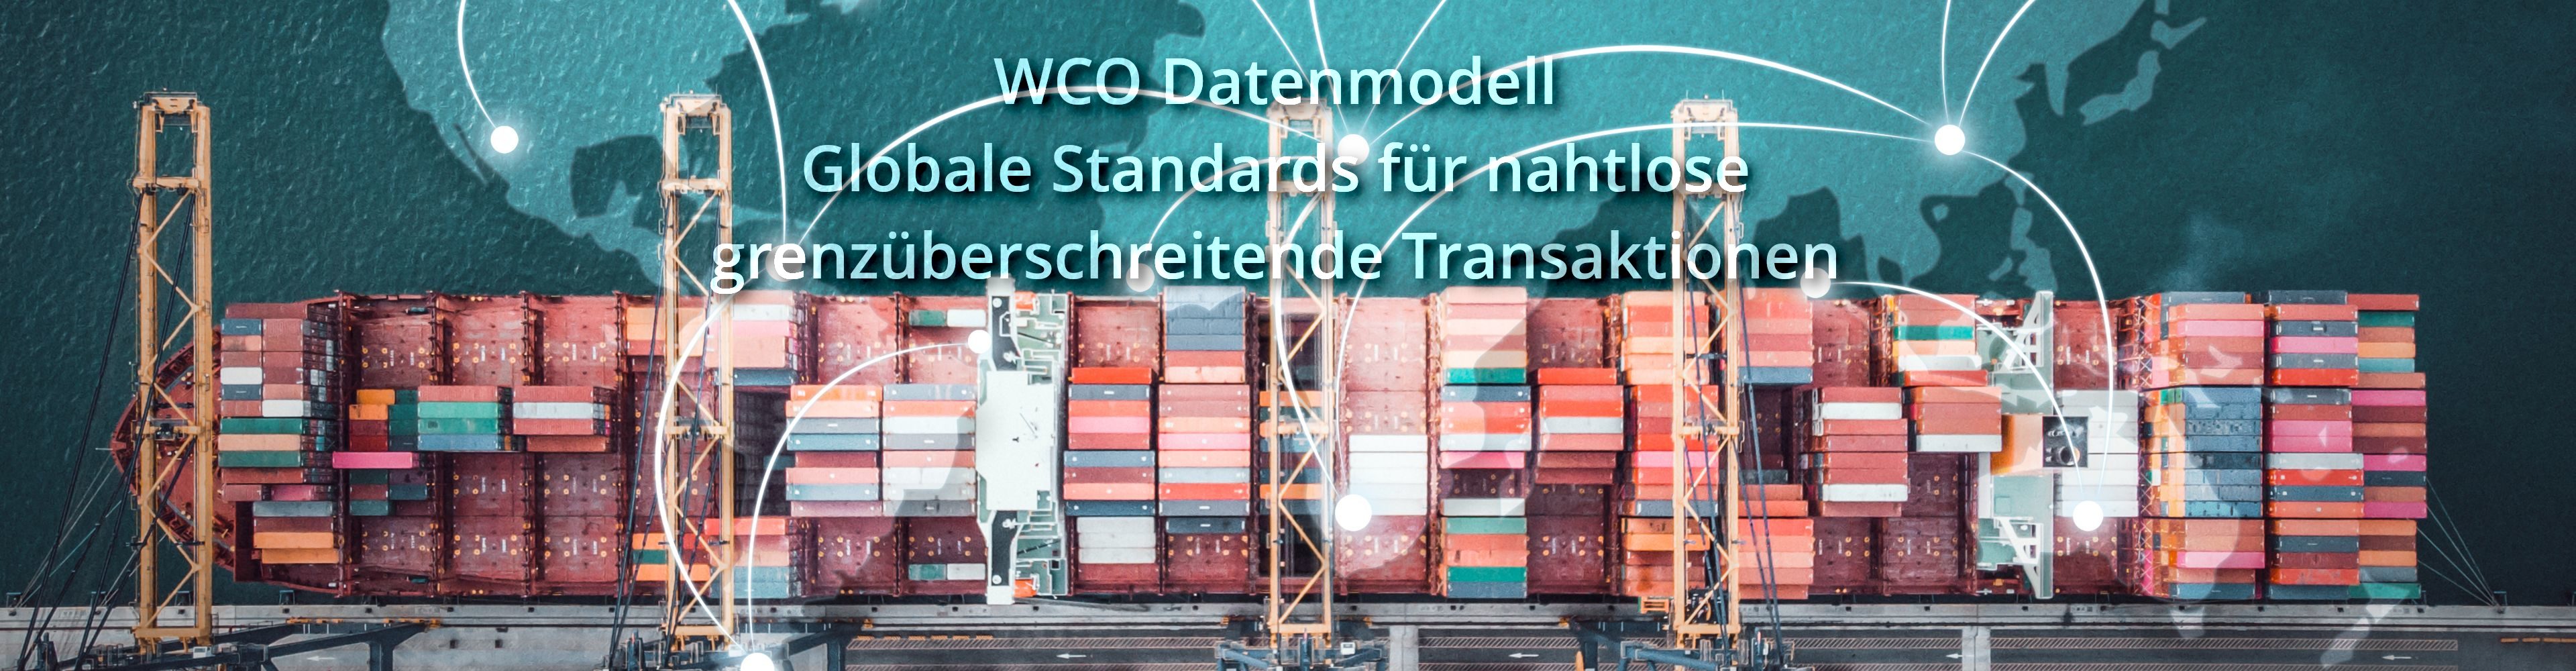 WZO Datenmodell - Globale Standards für nahtlose grenzüberschreitende Transaktionen